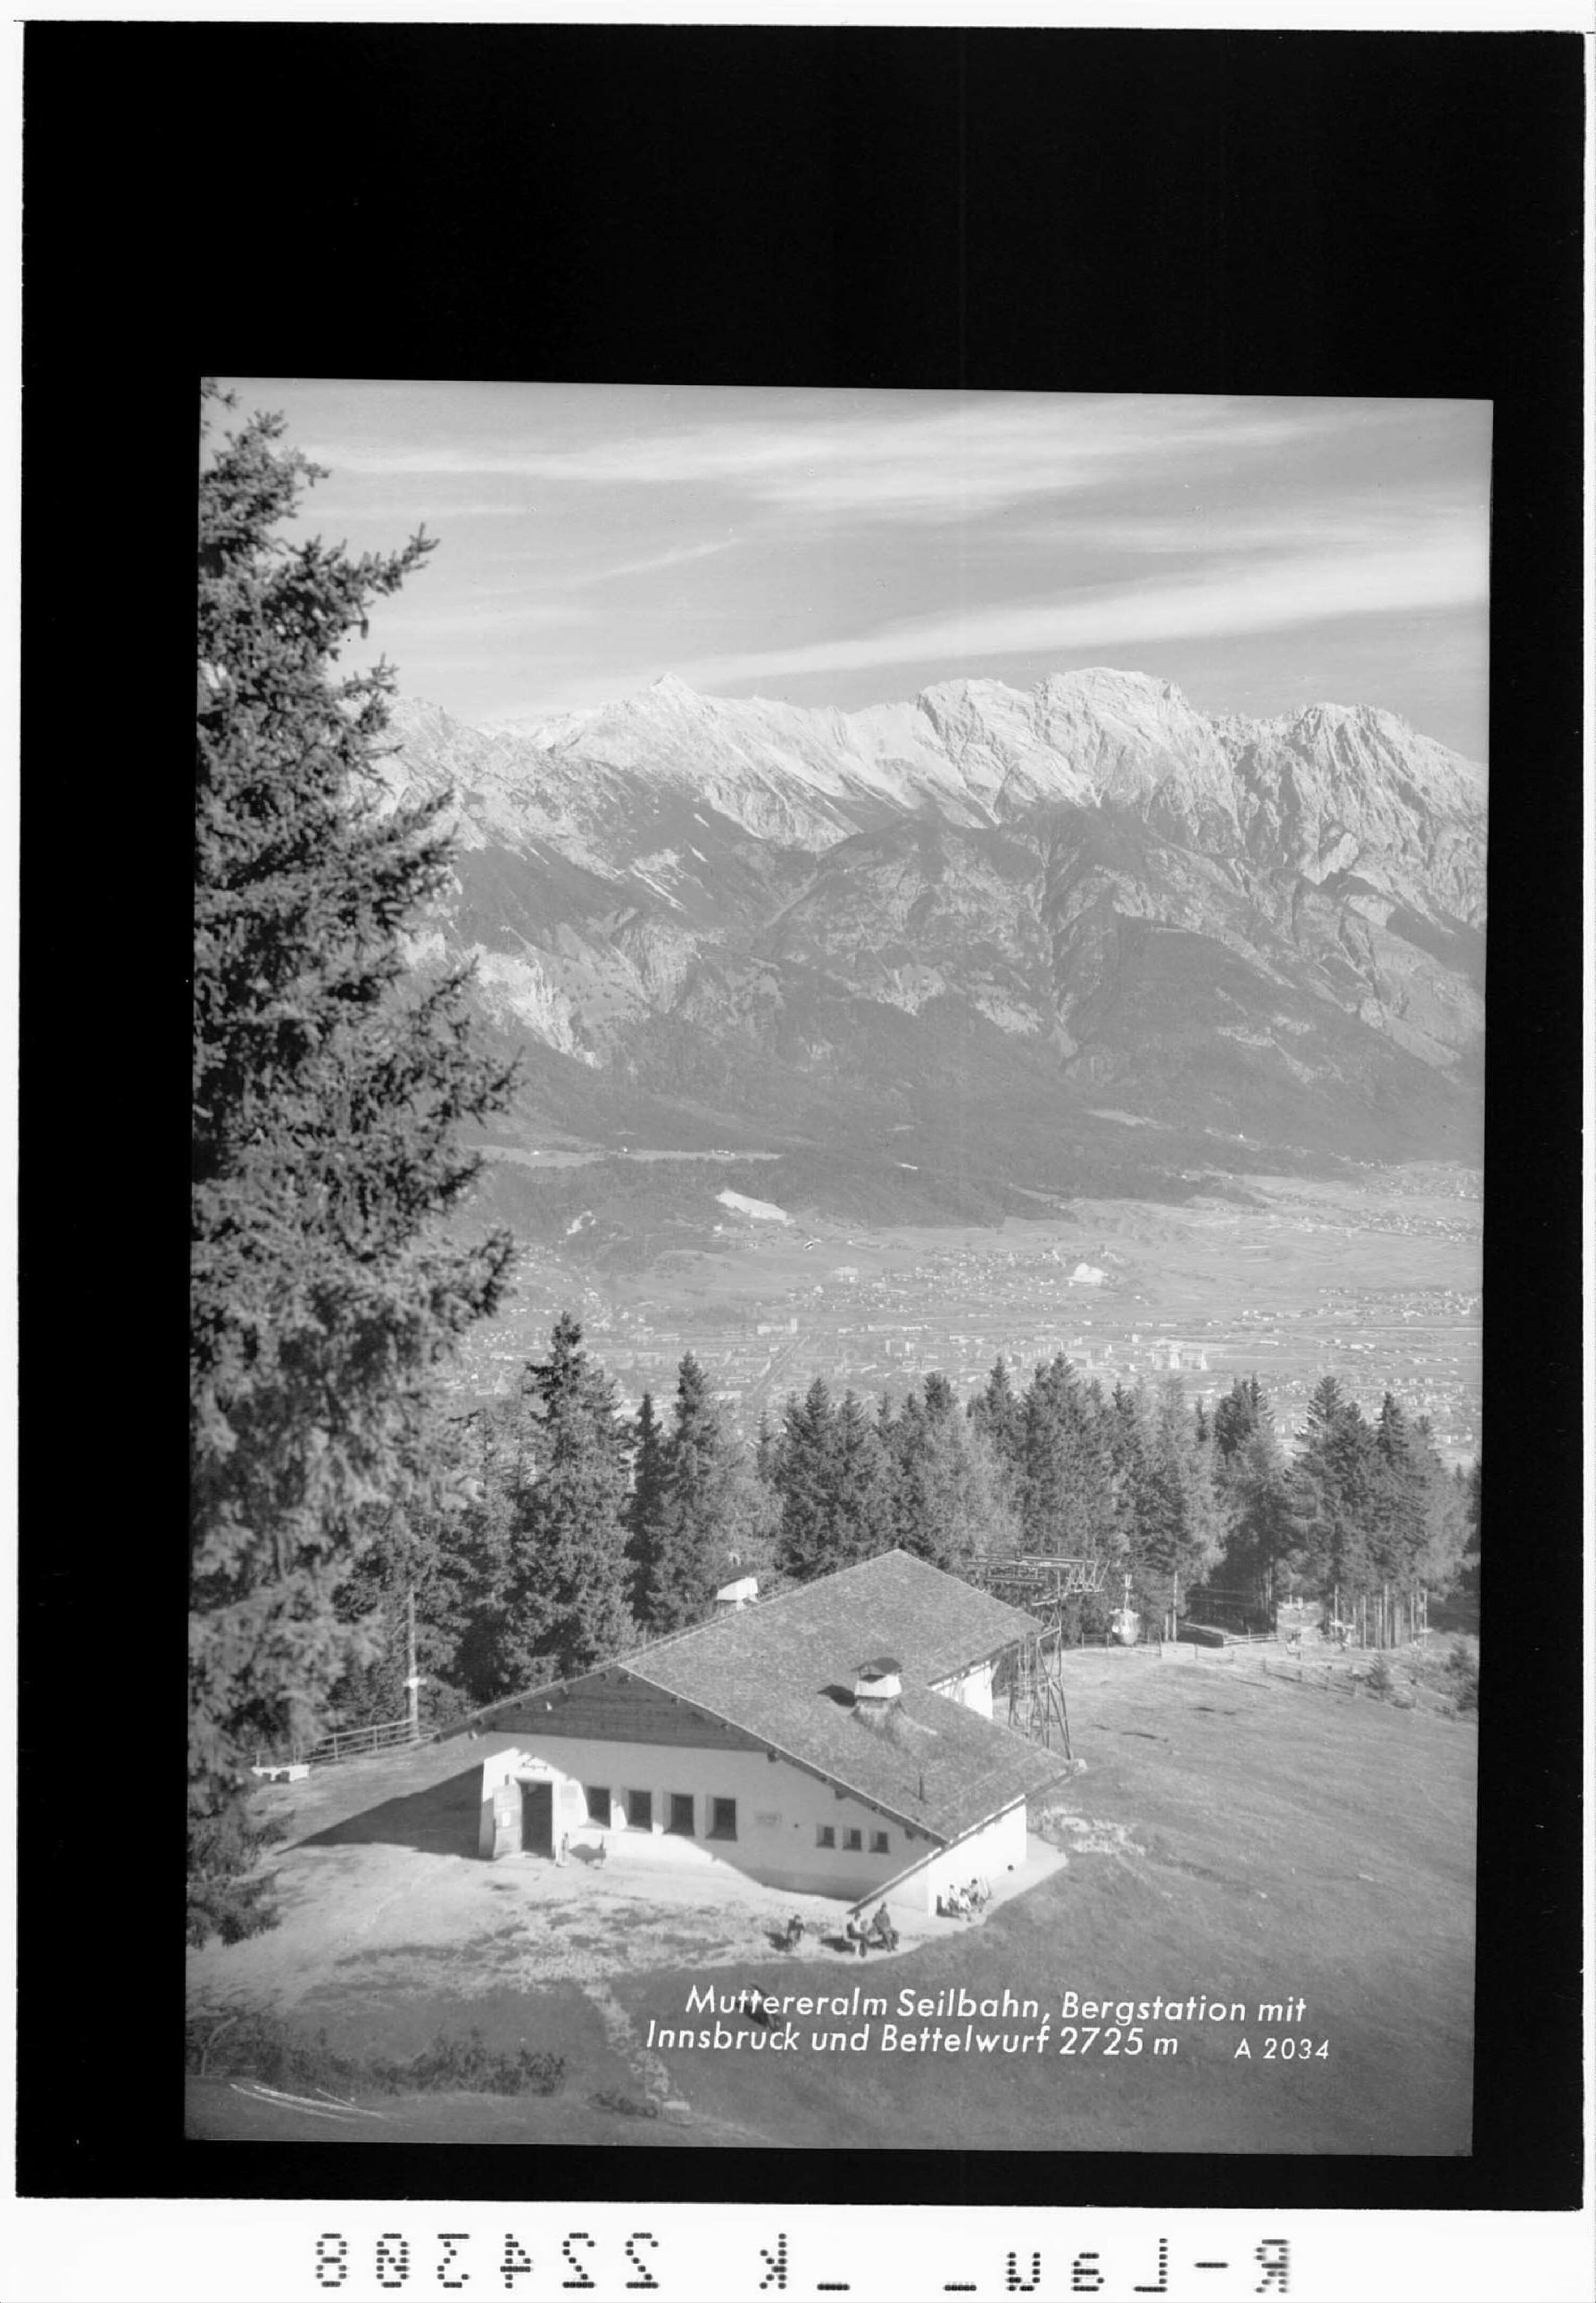 Muttereralm Seilbahn / Bergstation mit Innsbruck und Bettelwurf></div>


    <hr>
    <div class=